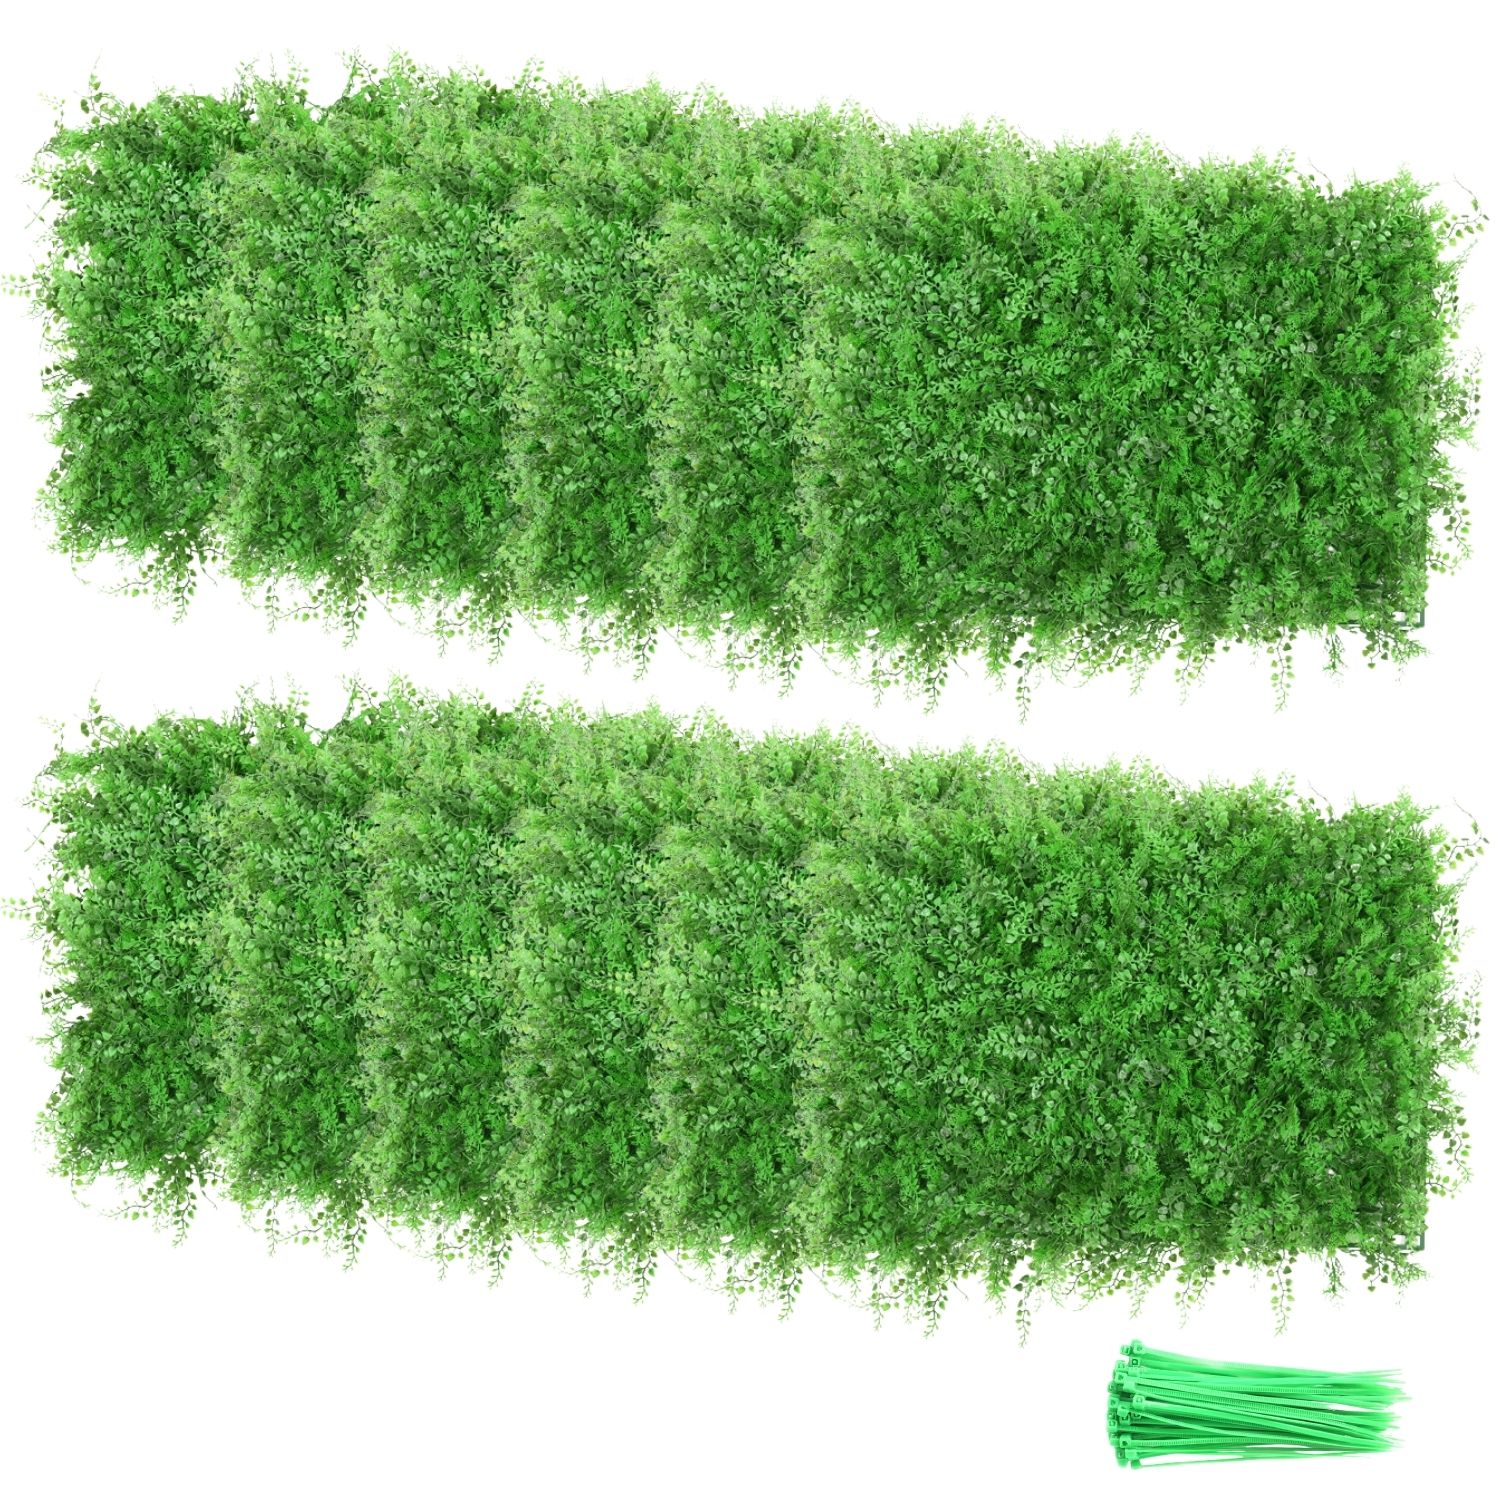  ウォールグリーン 12枚セット 60x40cm ジョイント式 壁面緑化 フェイクグリーン 人工芝生マット グリーンフェンス 壁掛け 観葉植物 室内 屋外 設置簡単 グリーンインテリア おしゃれ 人工芝の壁の装飾 高密度 UV保護 目隠し